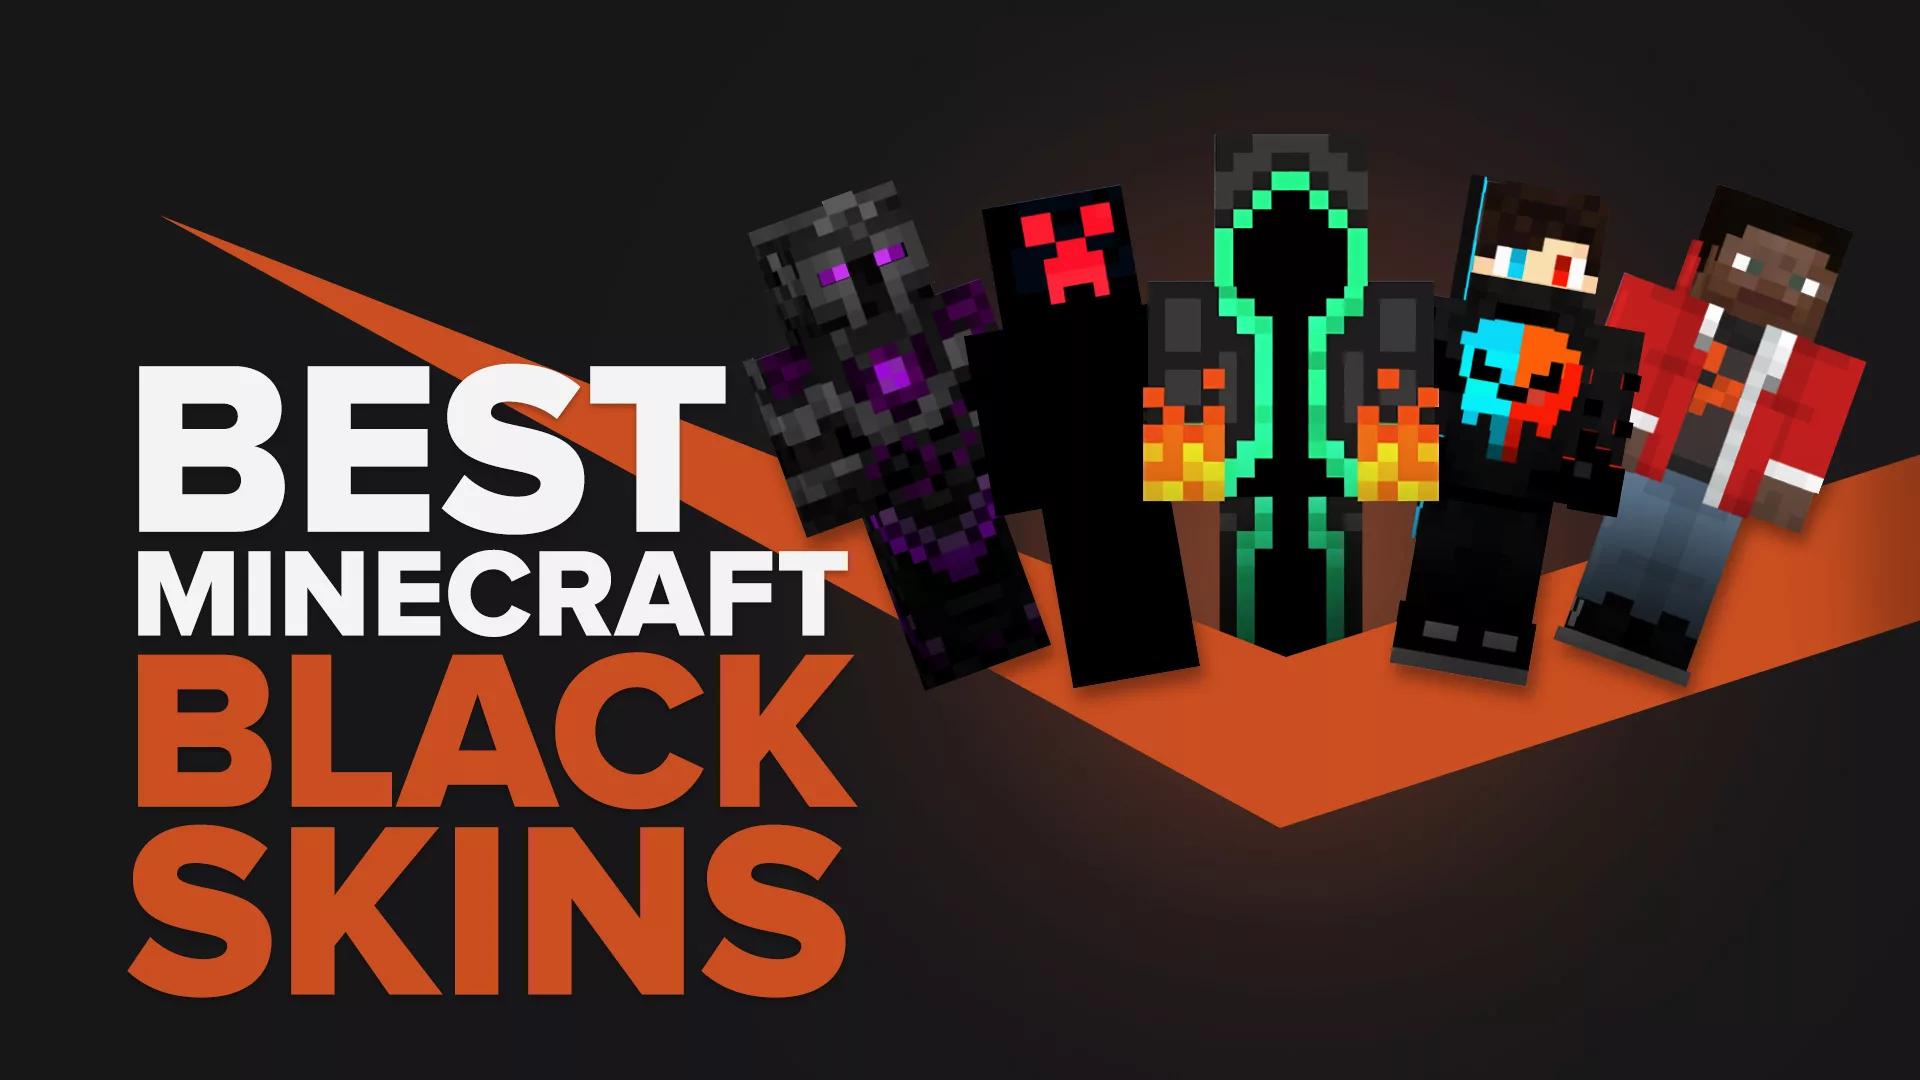 Best Black Skins in Minecraft